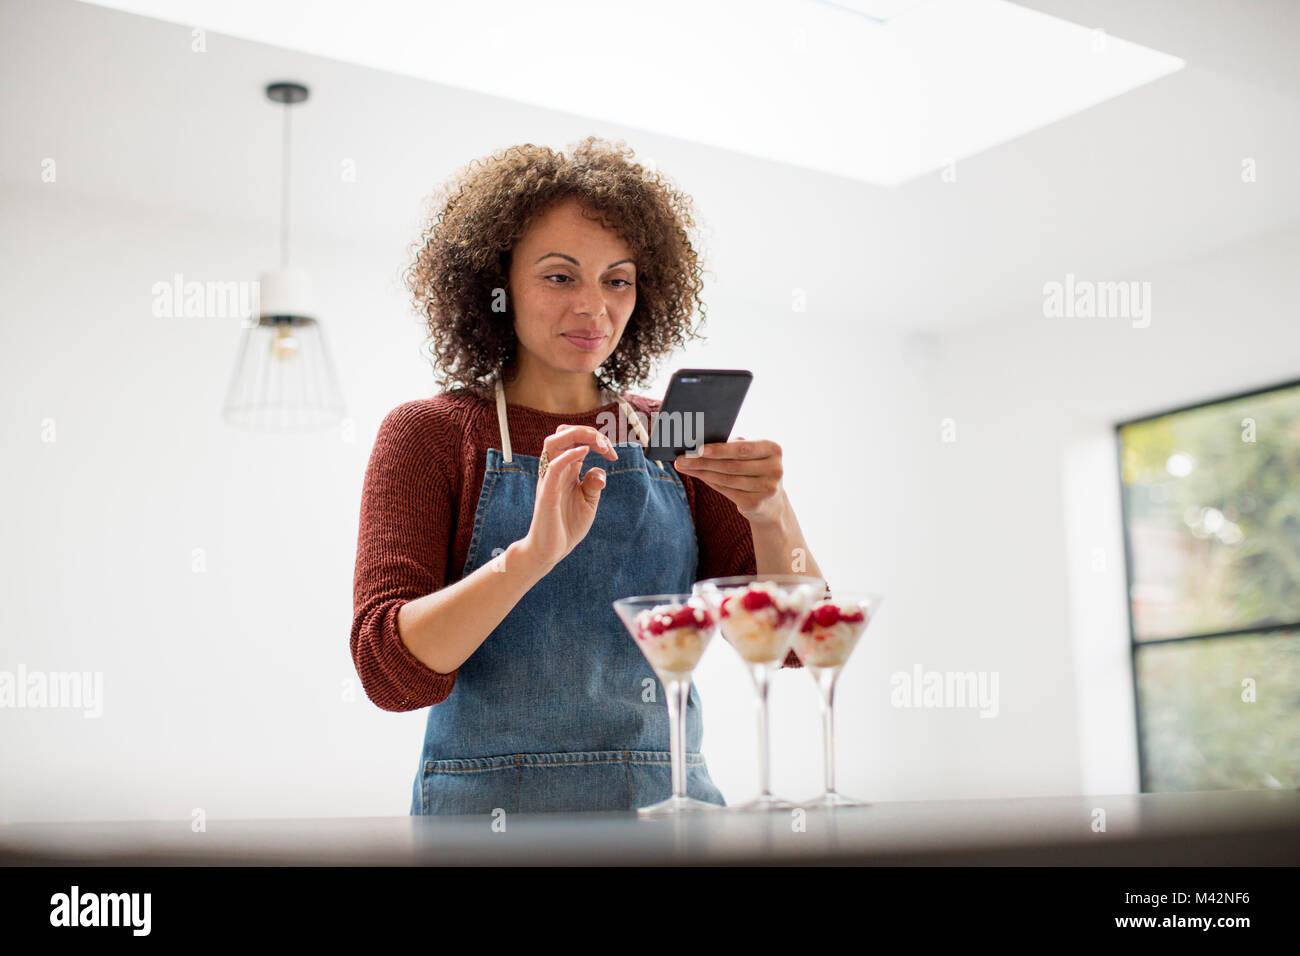 L'alimentation femelle blogger affichant une photo avec smartphone Banque D'Images